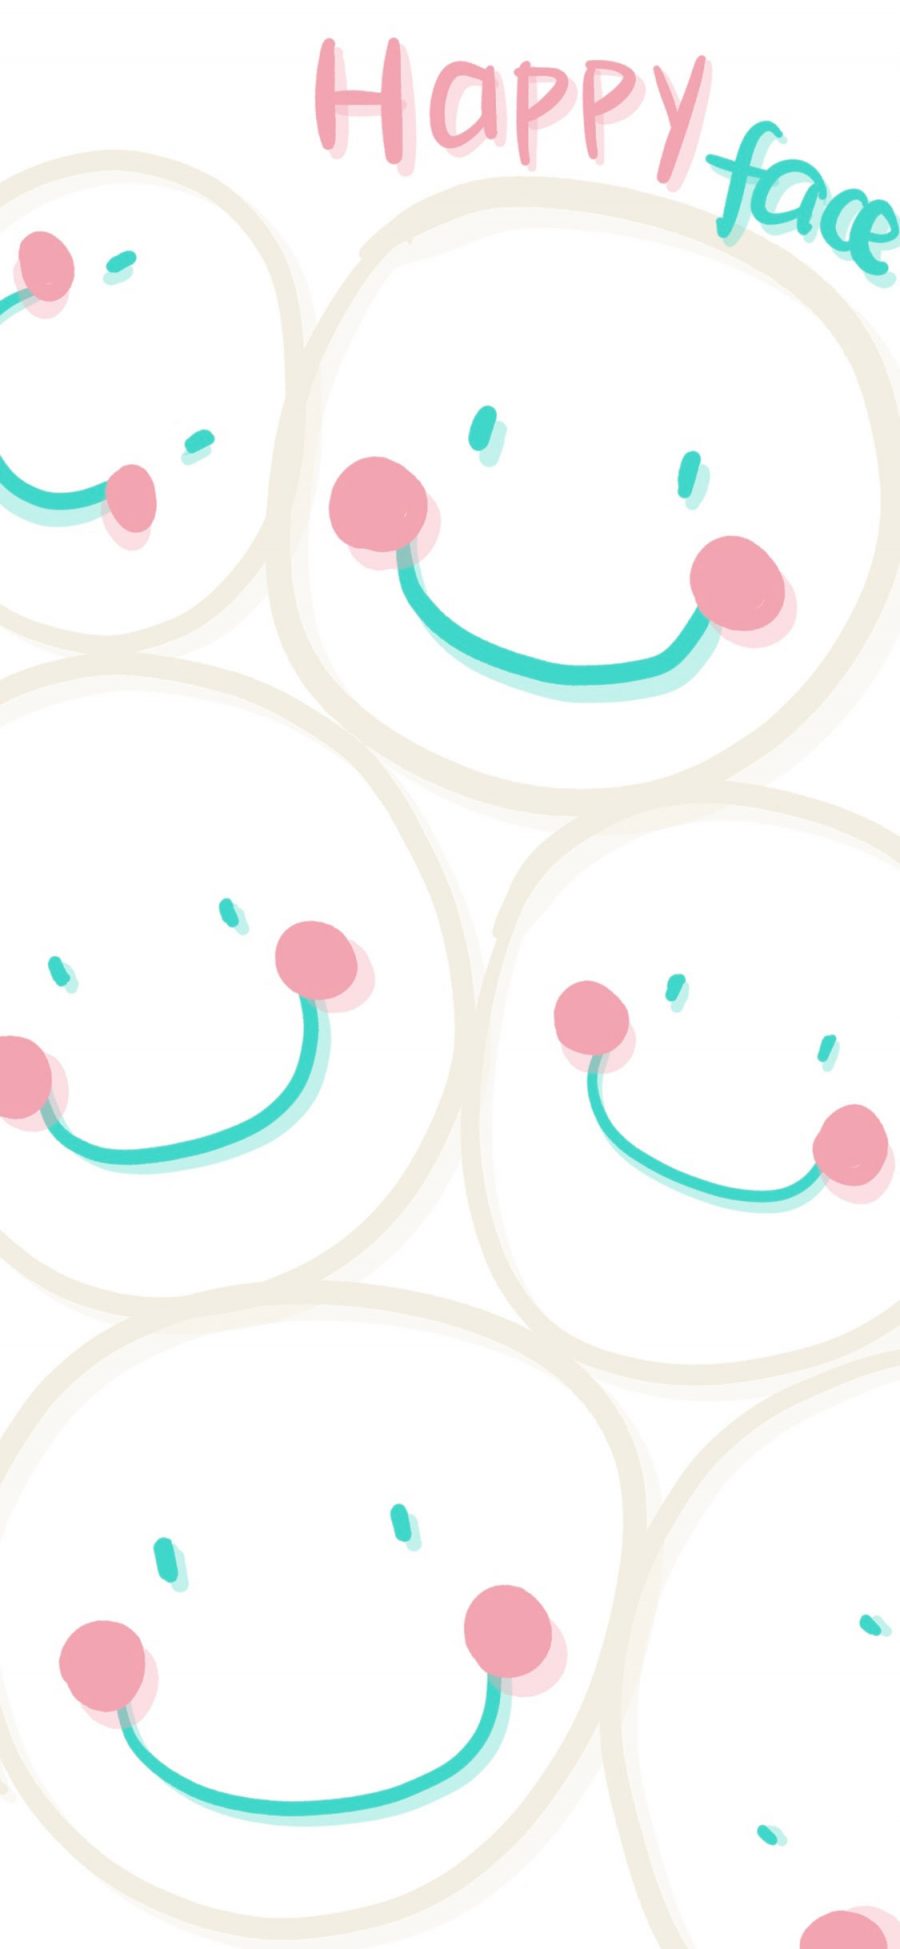 [2436×1125]笑脸 happy face 平铺 苹果手机动漫壁纸图片